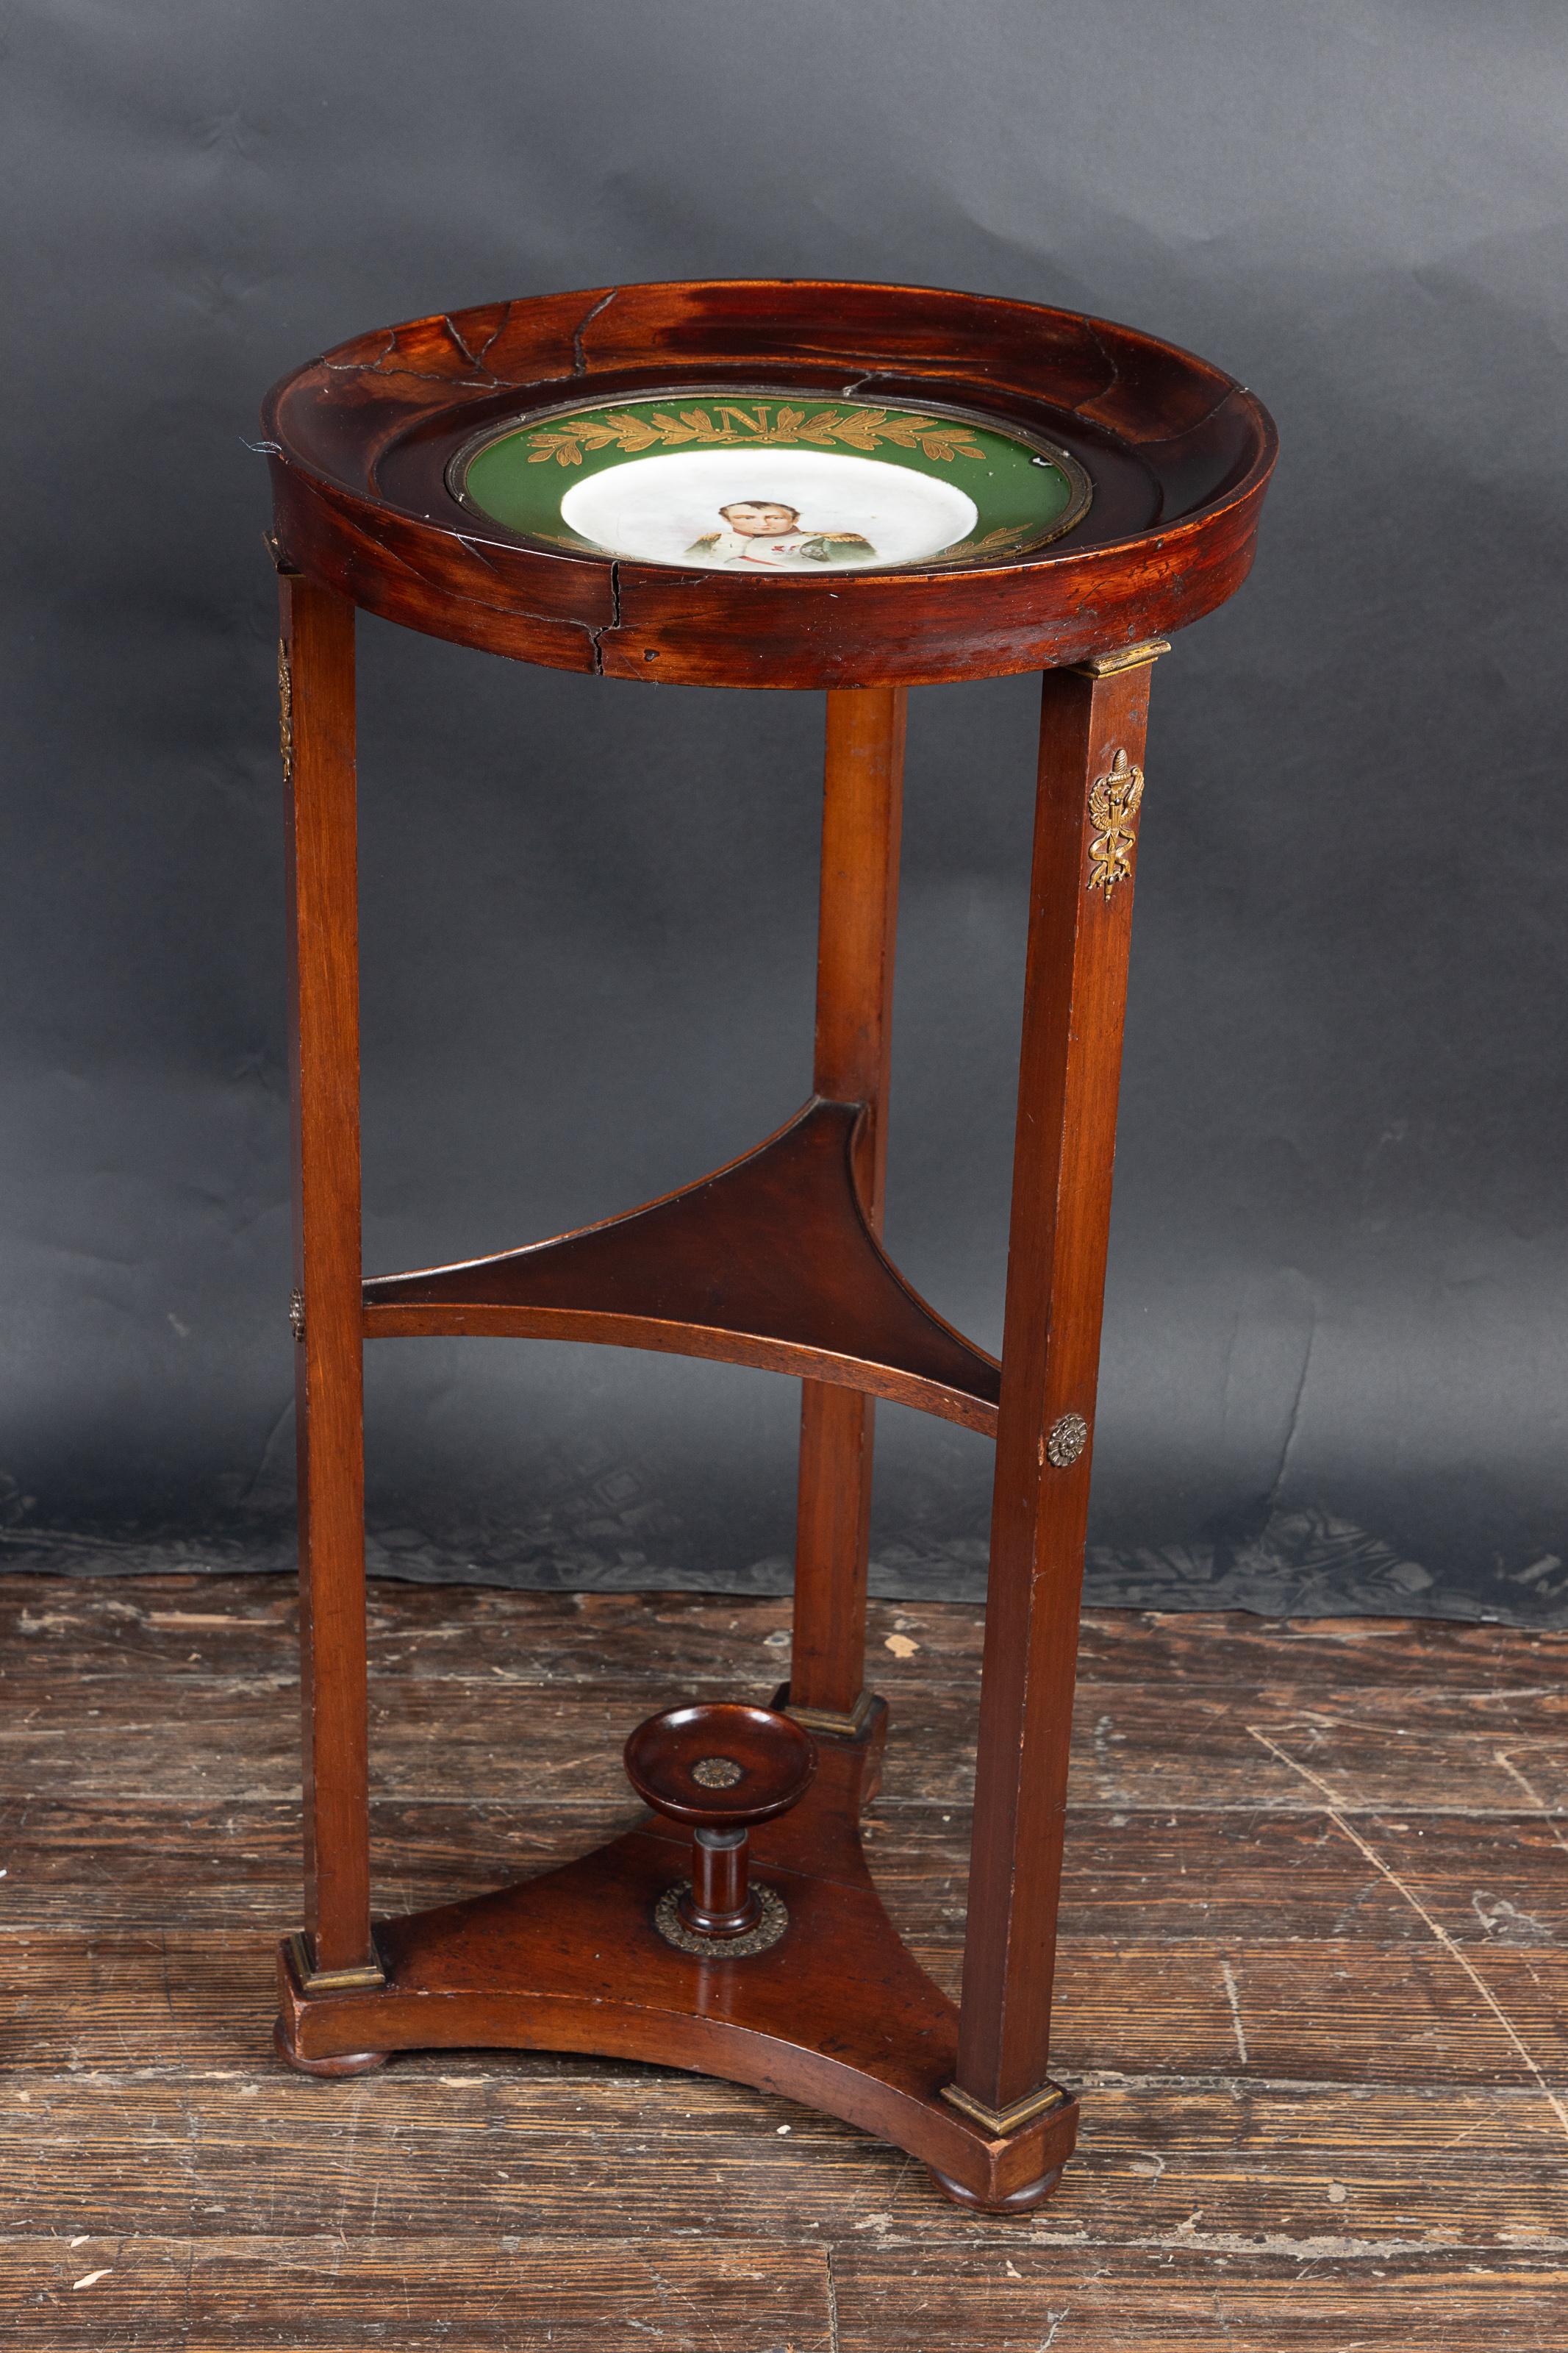 Paar französische runde Mahagonitische in Form eines Empire-Gueridons aus dem 19. Jahrhundert mit drei Ablagen.  

Ein Tisch hat eine massive Holzplatte, der andere eine Platte mit grünem Rand und Goldverzierungen.  Oben befindet sich das 